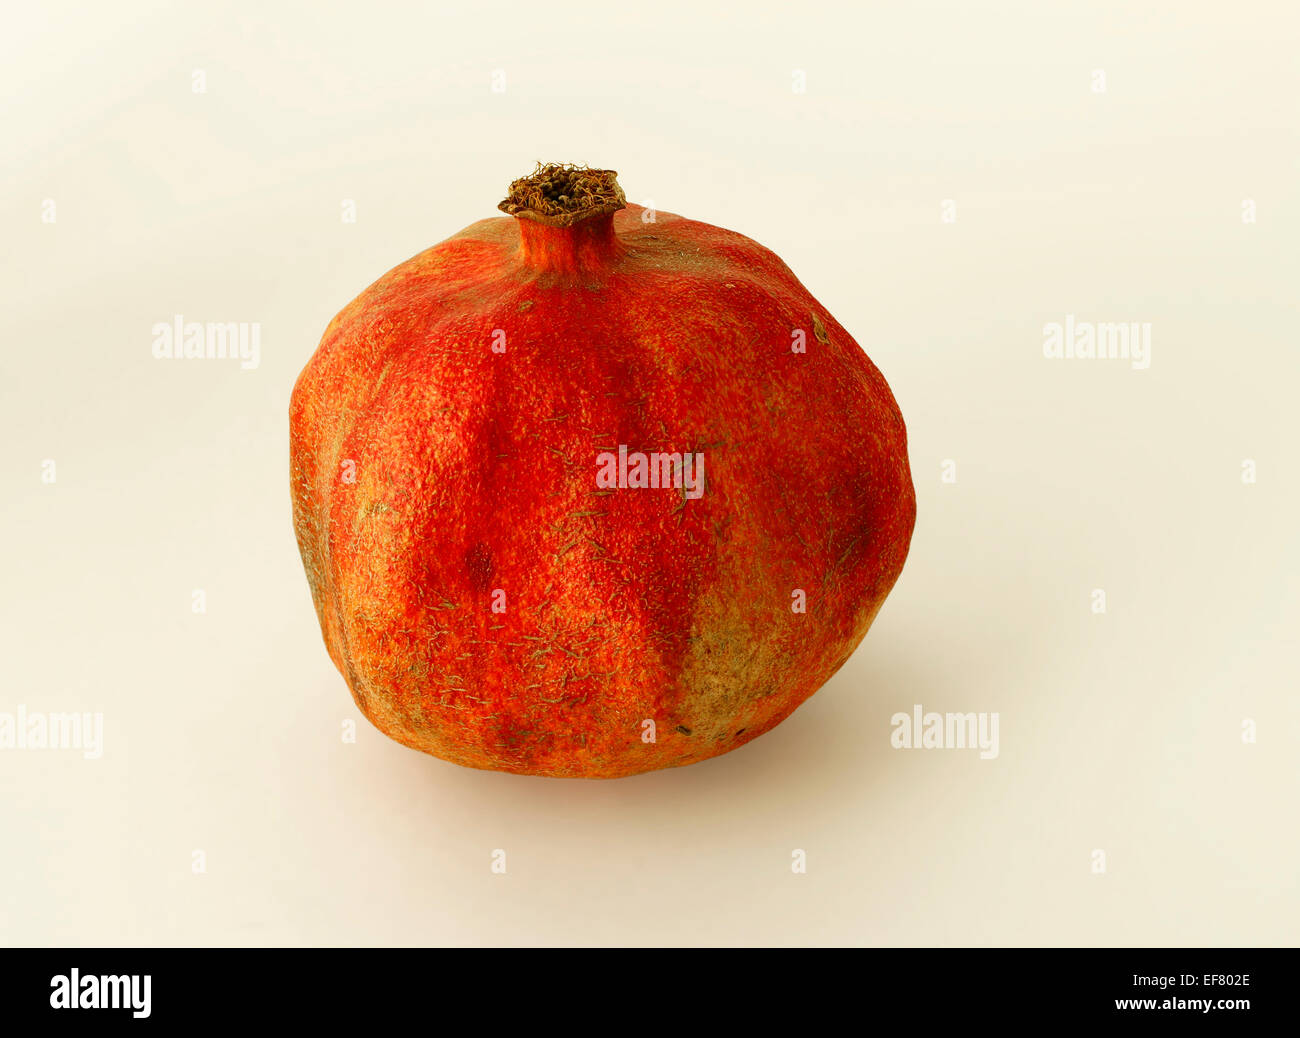 Melograno - frutta aromatico con un sapore dolce e agro Foto Stock